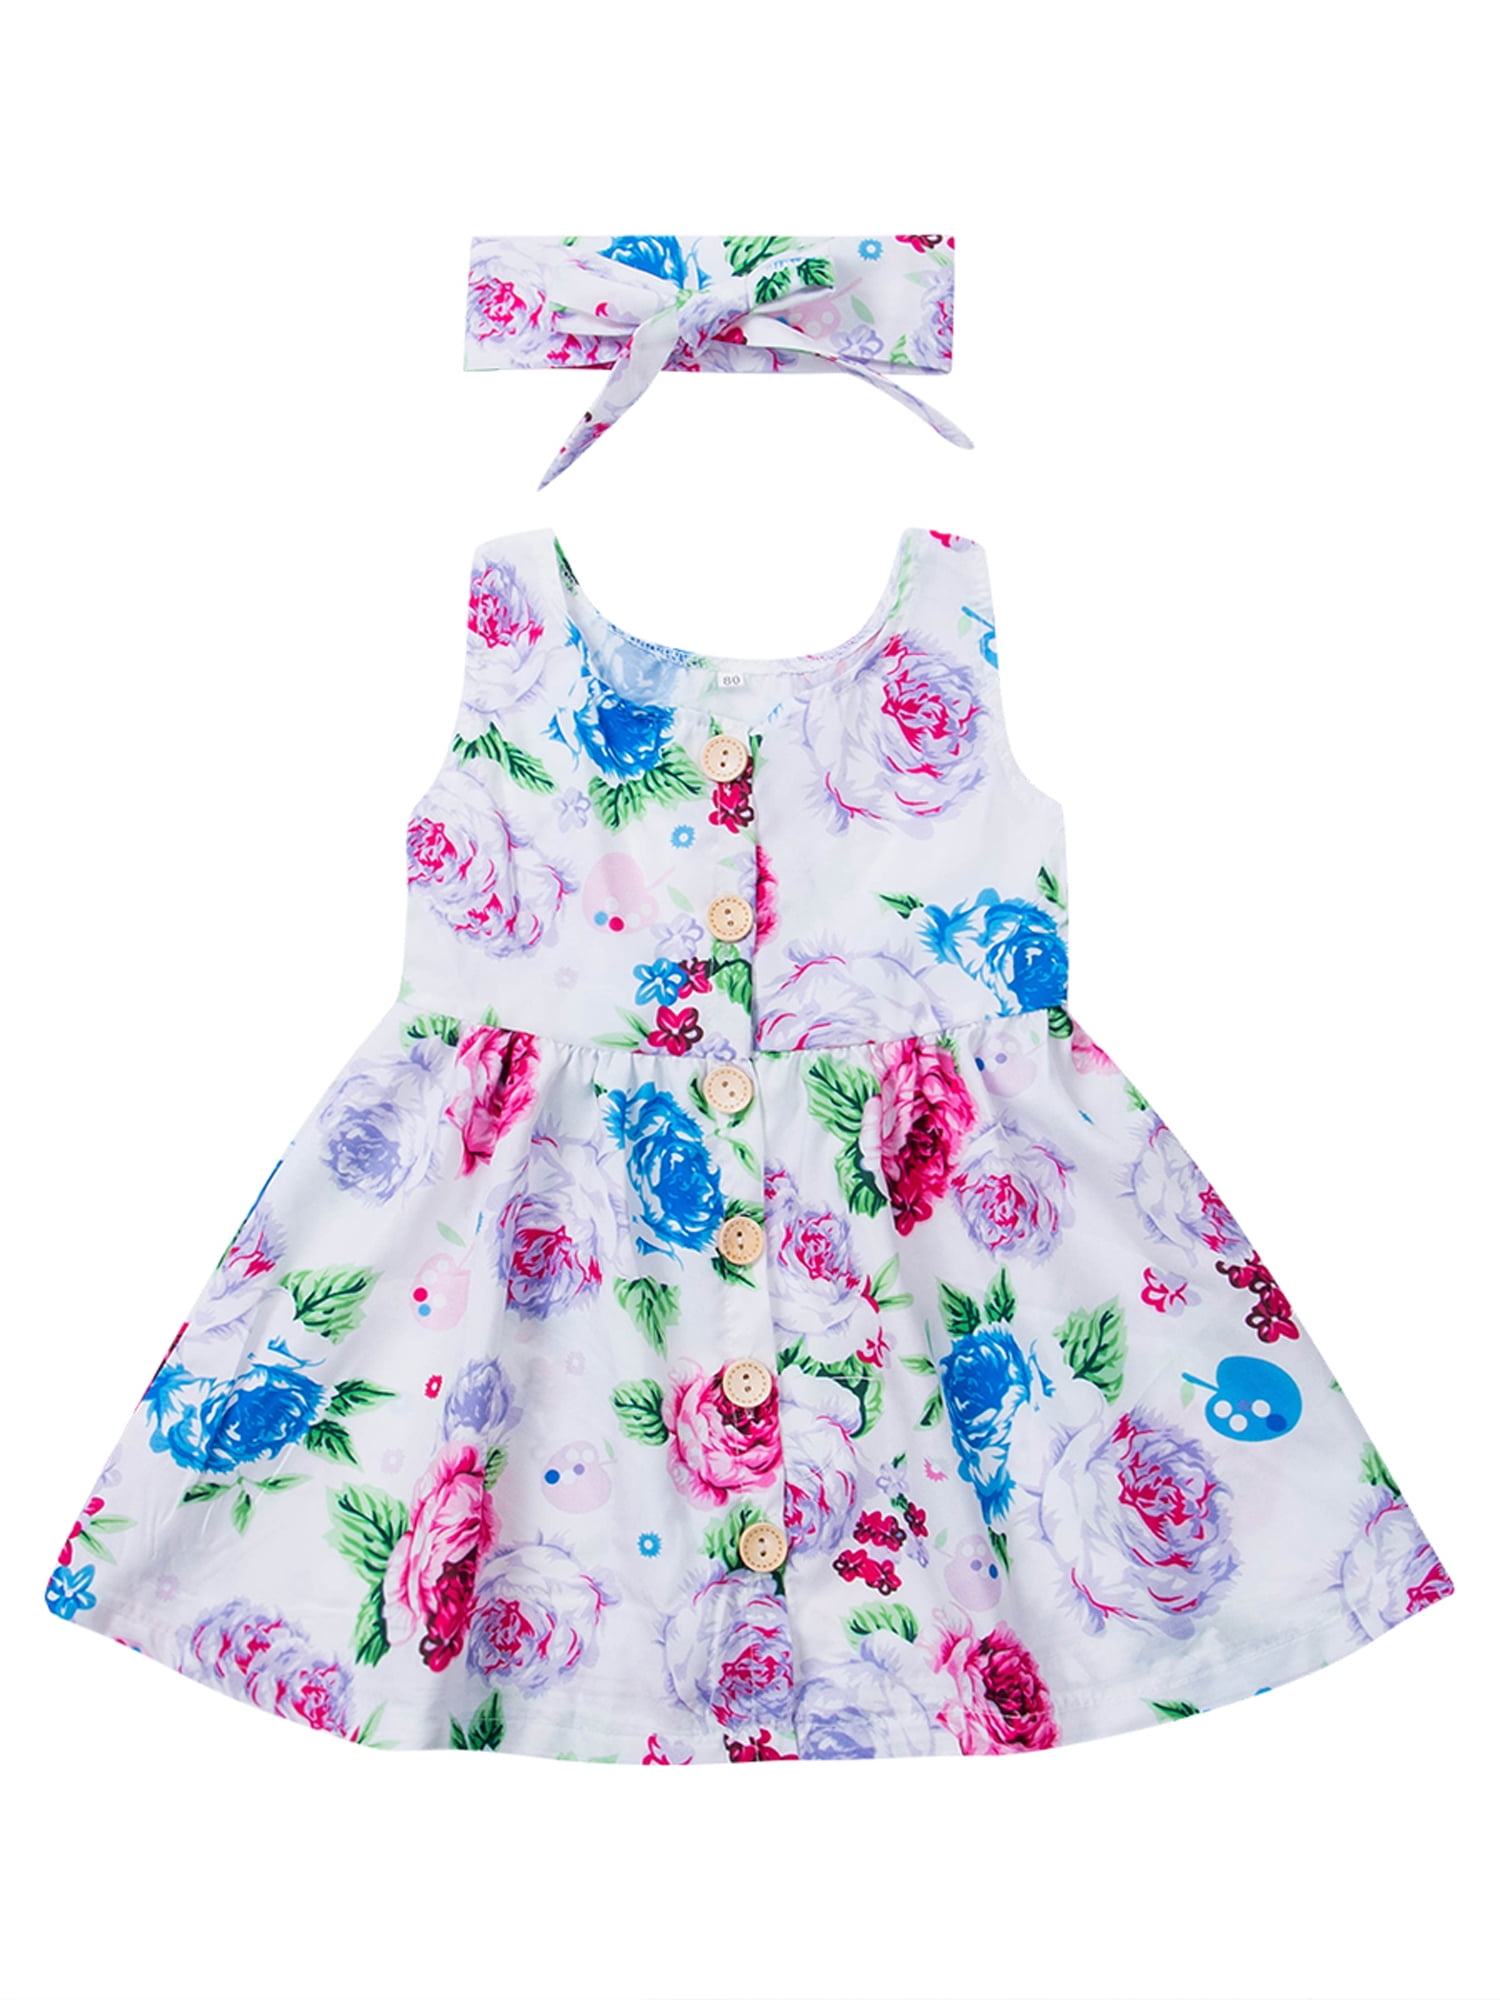 Kids Baby Girls Sleeveless Summer Casual Dress Toddler Polka Dot Pleated Dresses 